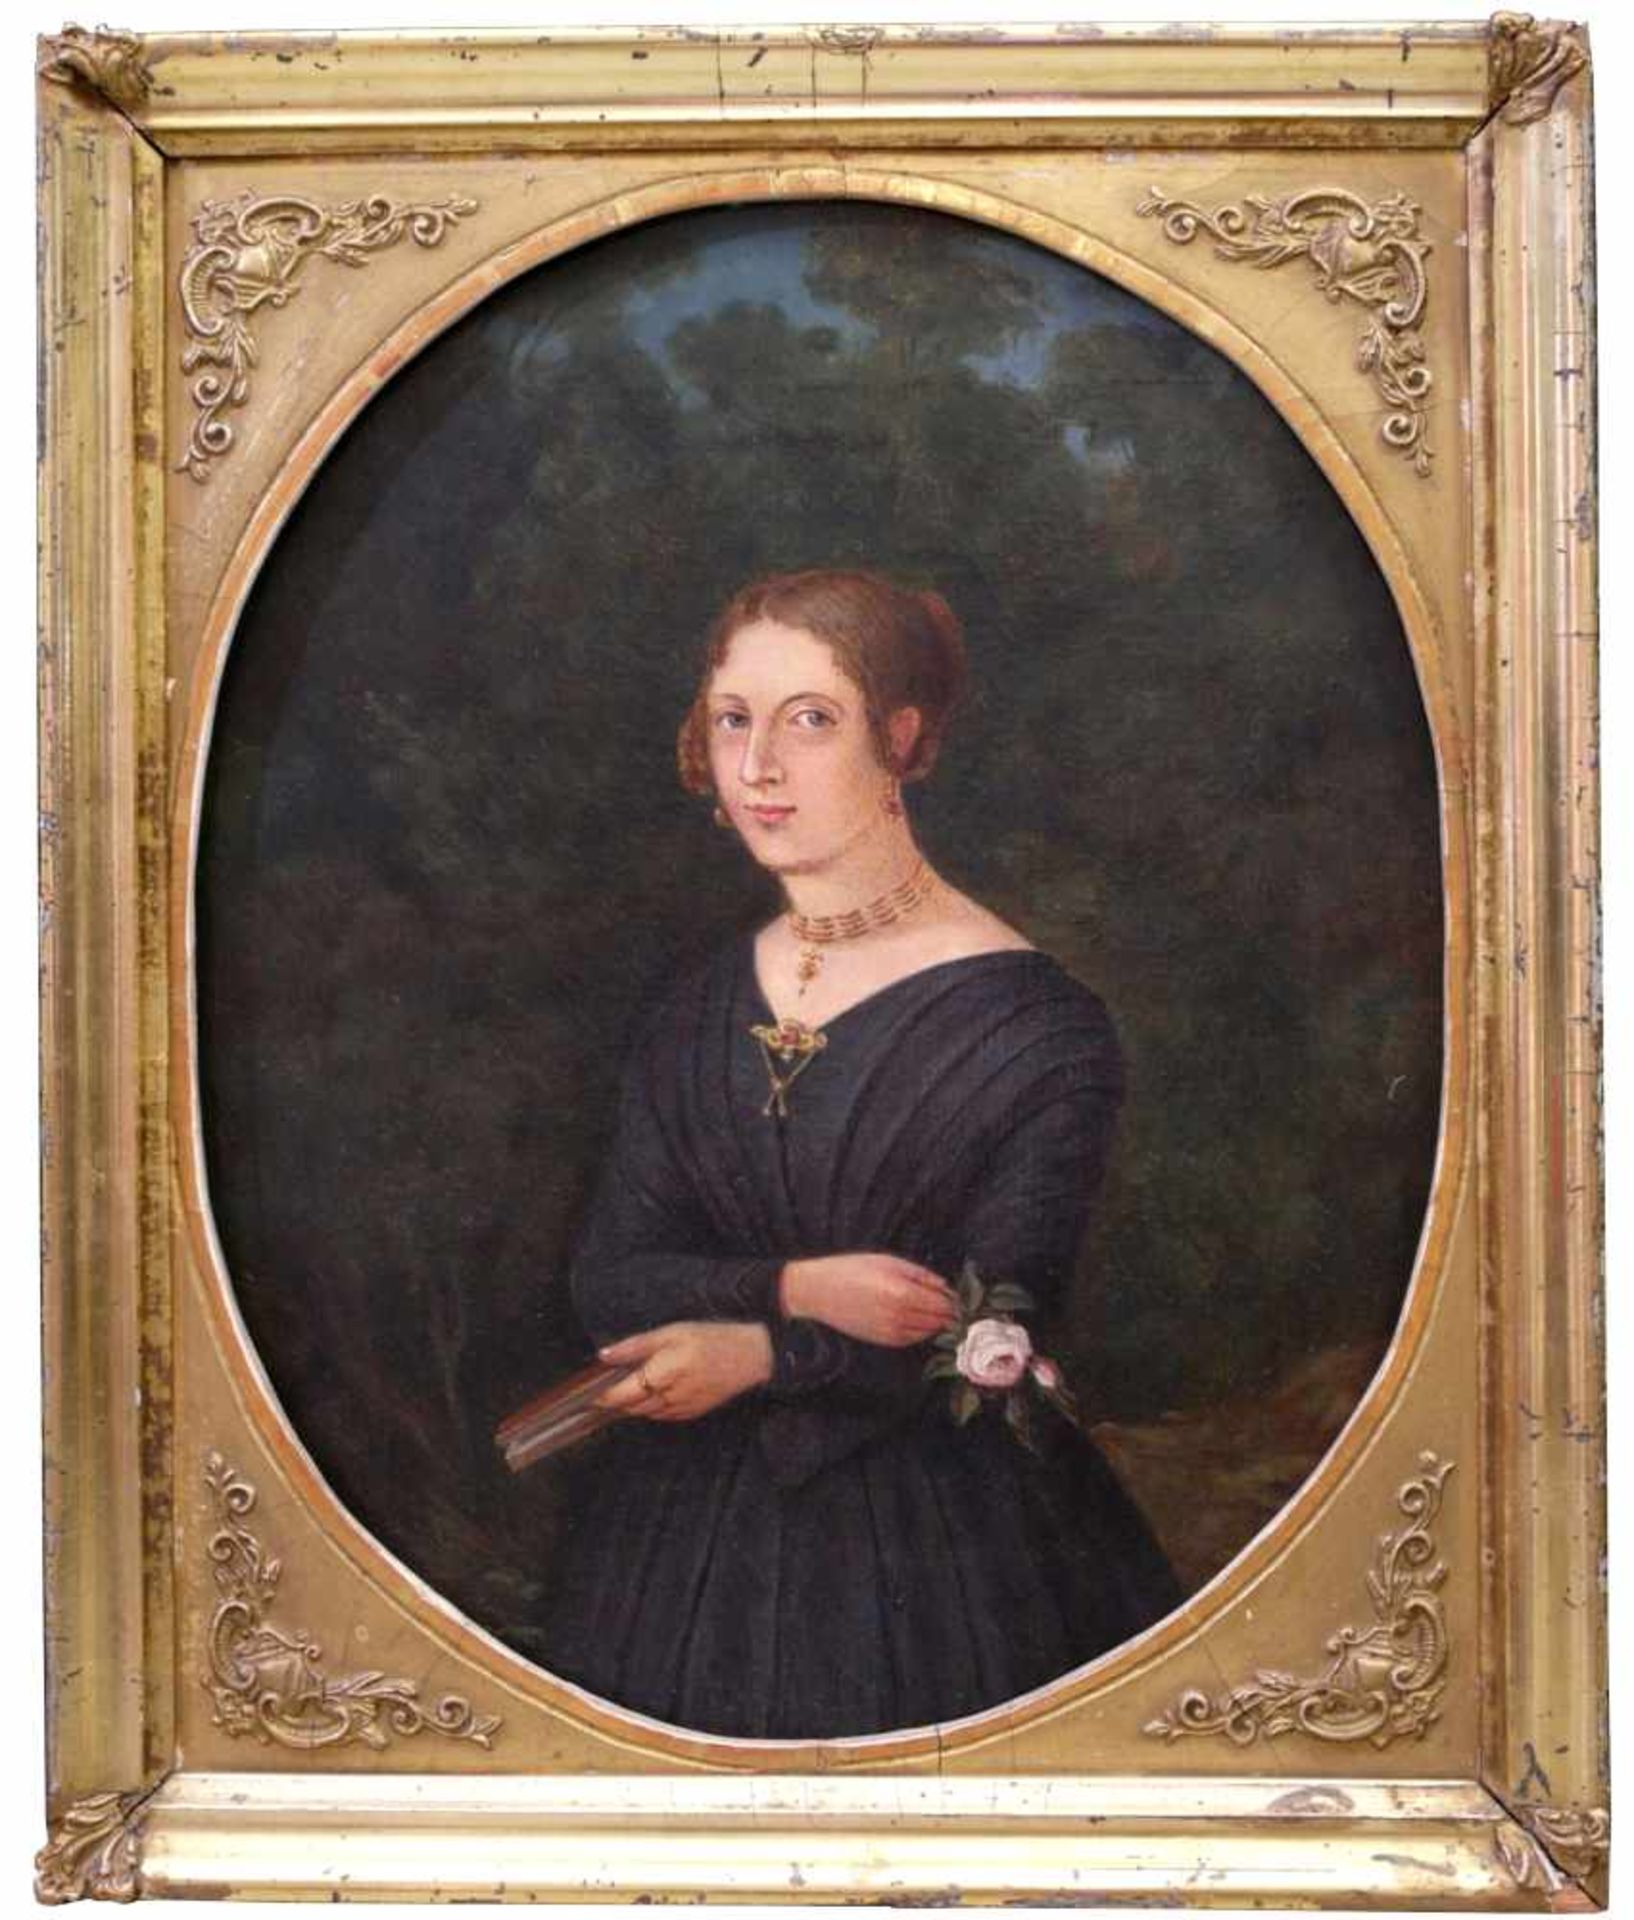 Unbekannt - Biedermeier-Portrait einer jungen Dame um 1850 - Image 2 of 10